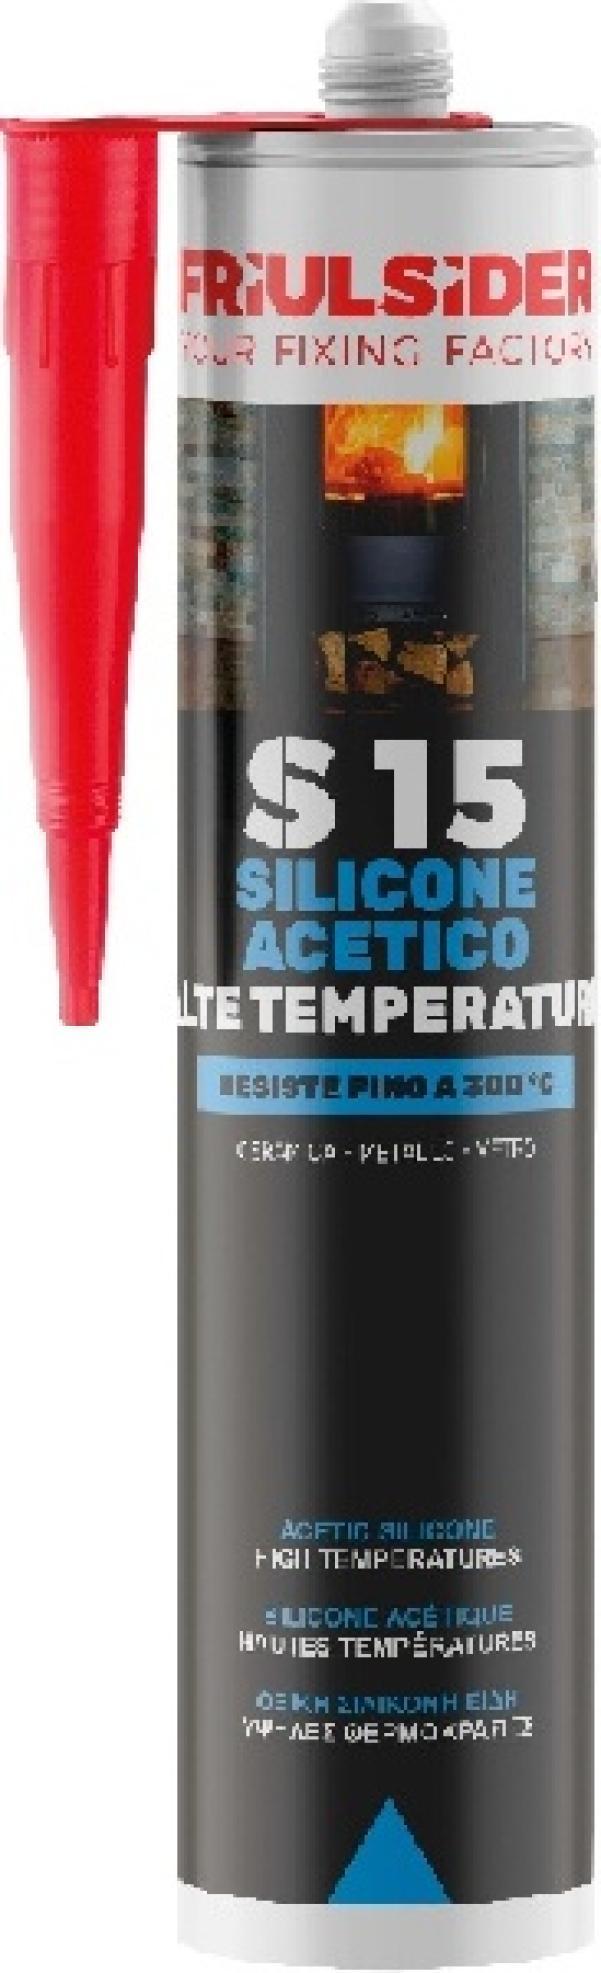 Silicone acetico alte temperature rosso ral3013 310 ml Friulsider S1507